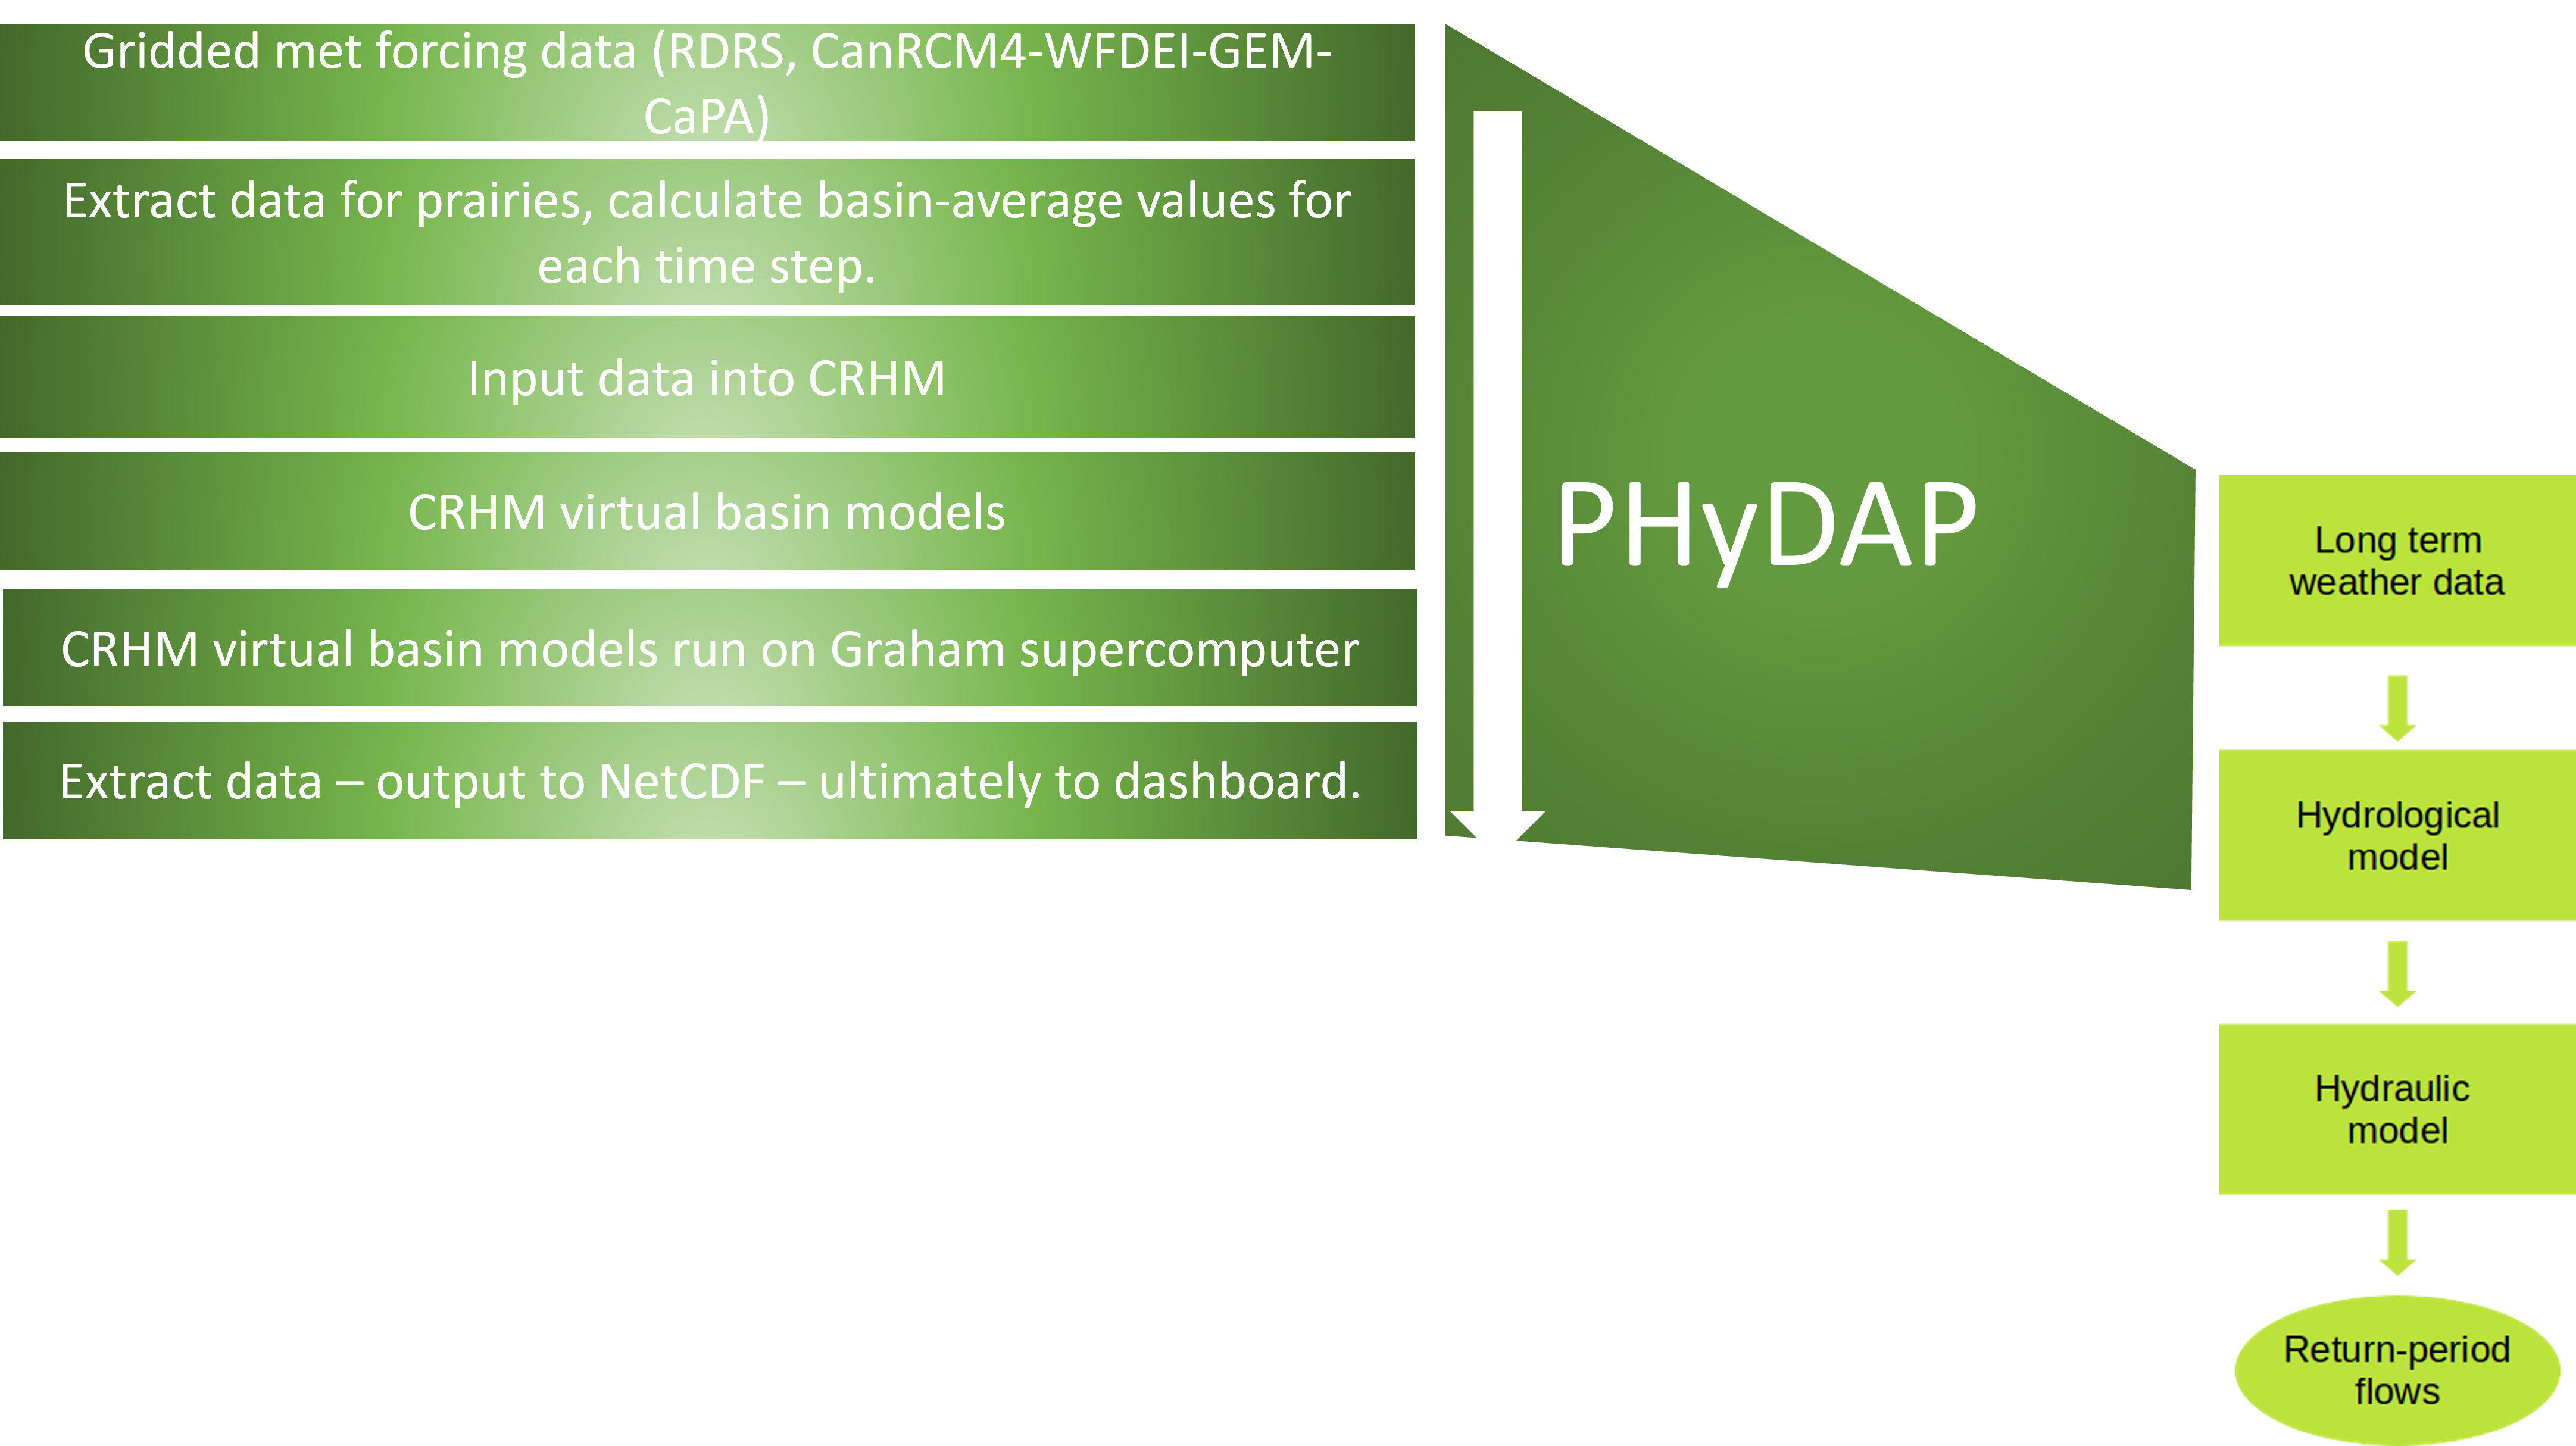 PHyDAP summary